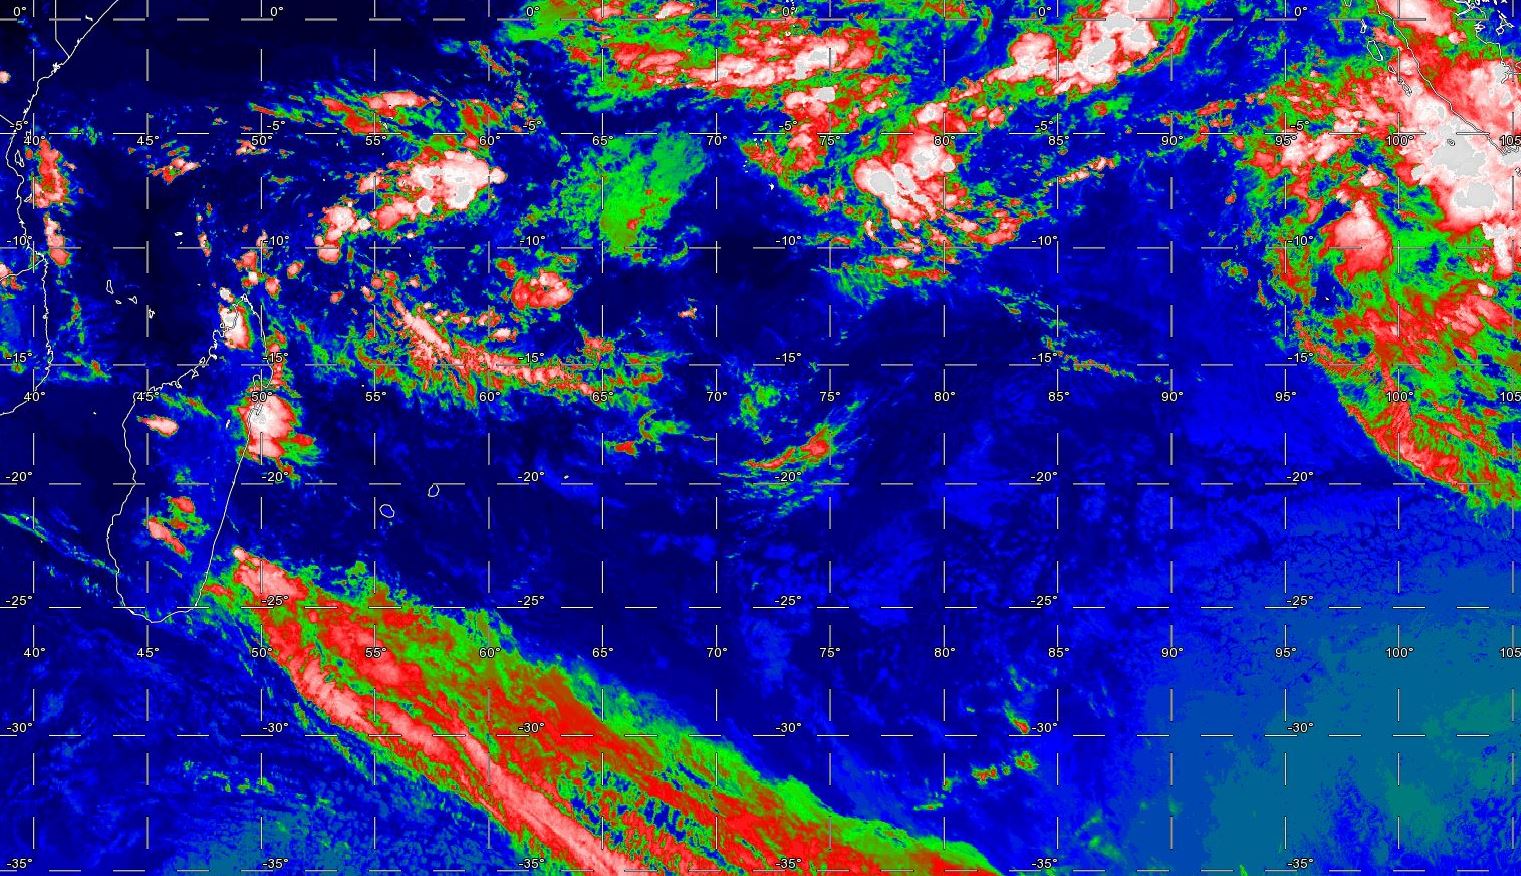 21h: plan large sur le Sud Indien. Système frontal au sud des Mascareignes. Nuages actifs dans la région de Tamatave. La zone de convergence est active avec une zone d'activité au nord-est des îles Agaléga, une autre à l'est des Chagos et une autre proche des îles indonésiennes.